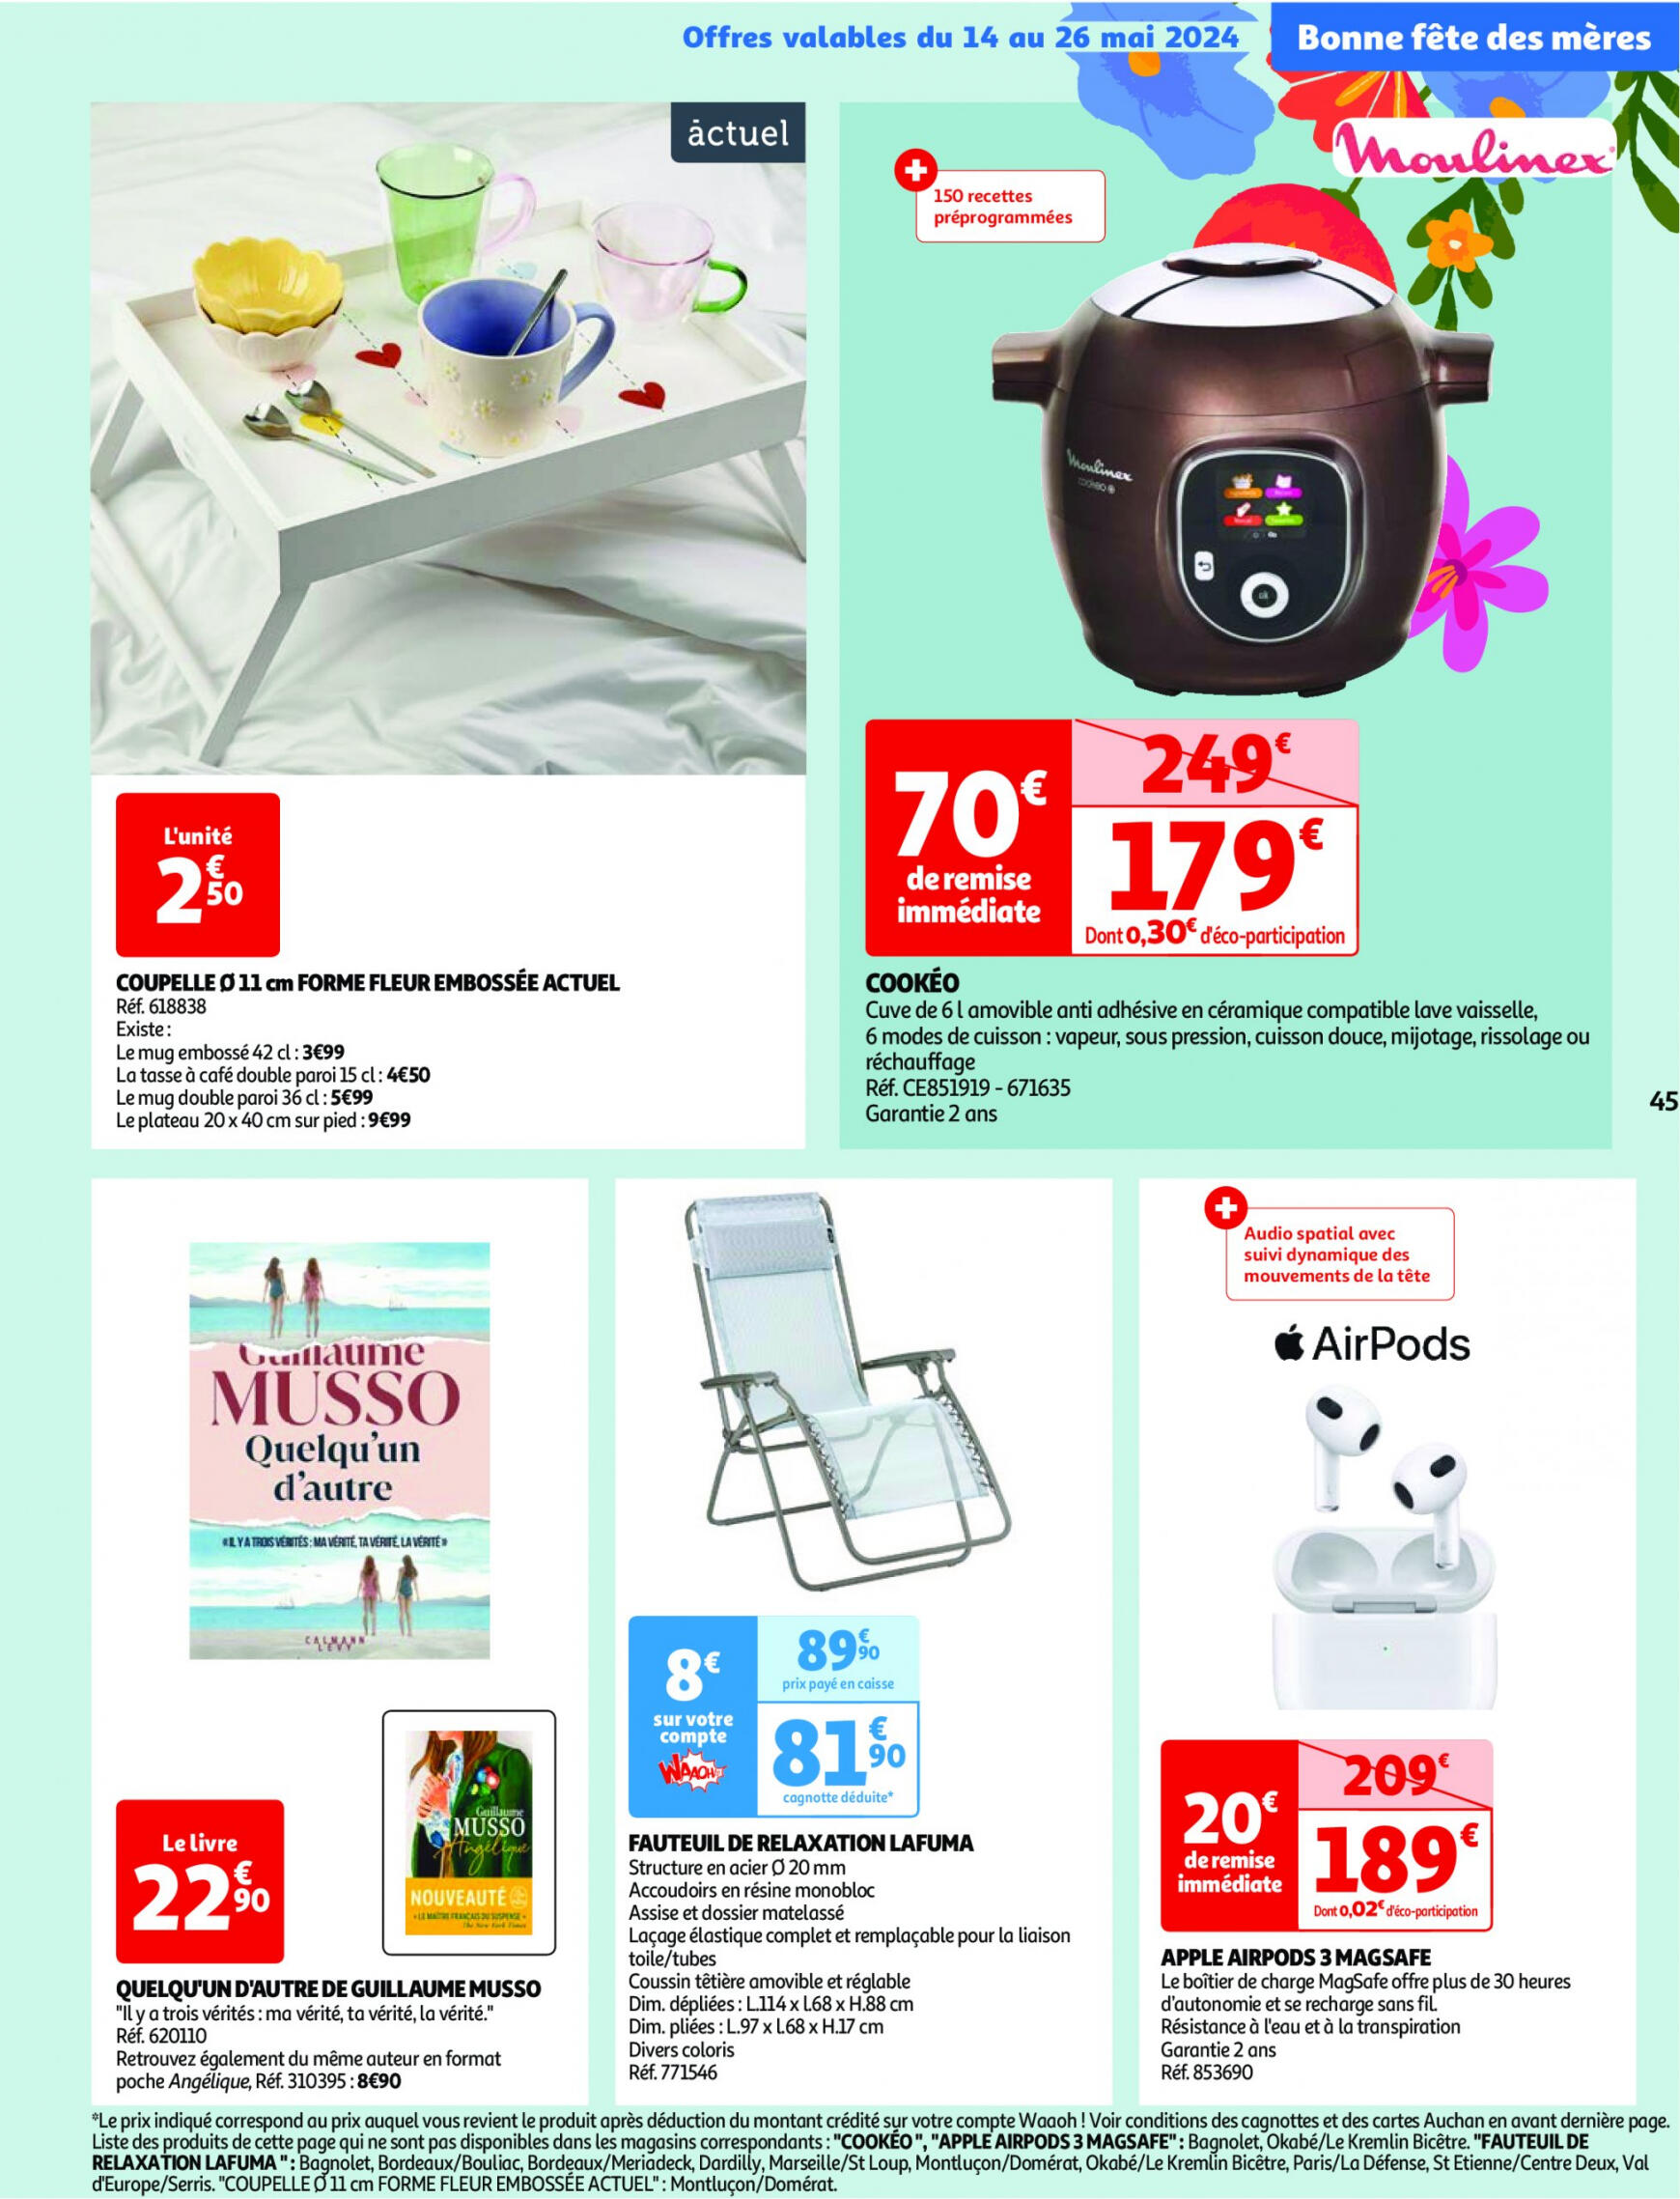 auchan - Auchan - Nos surgelés ont tout bon folder huidig 14.05. - 21.05. - page: 45